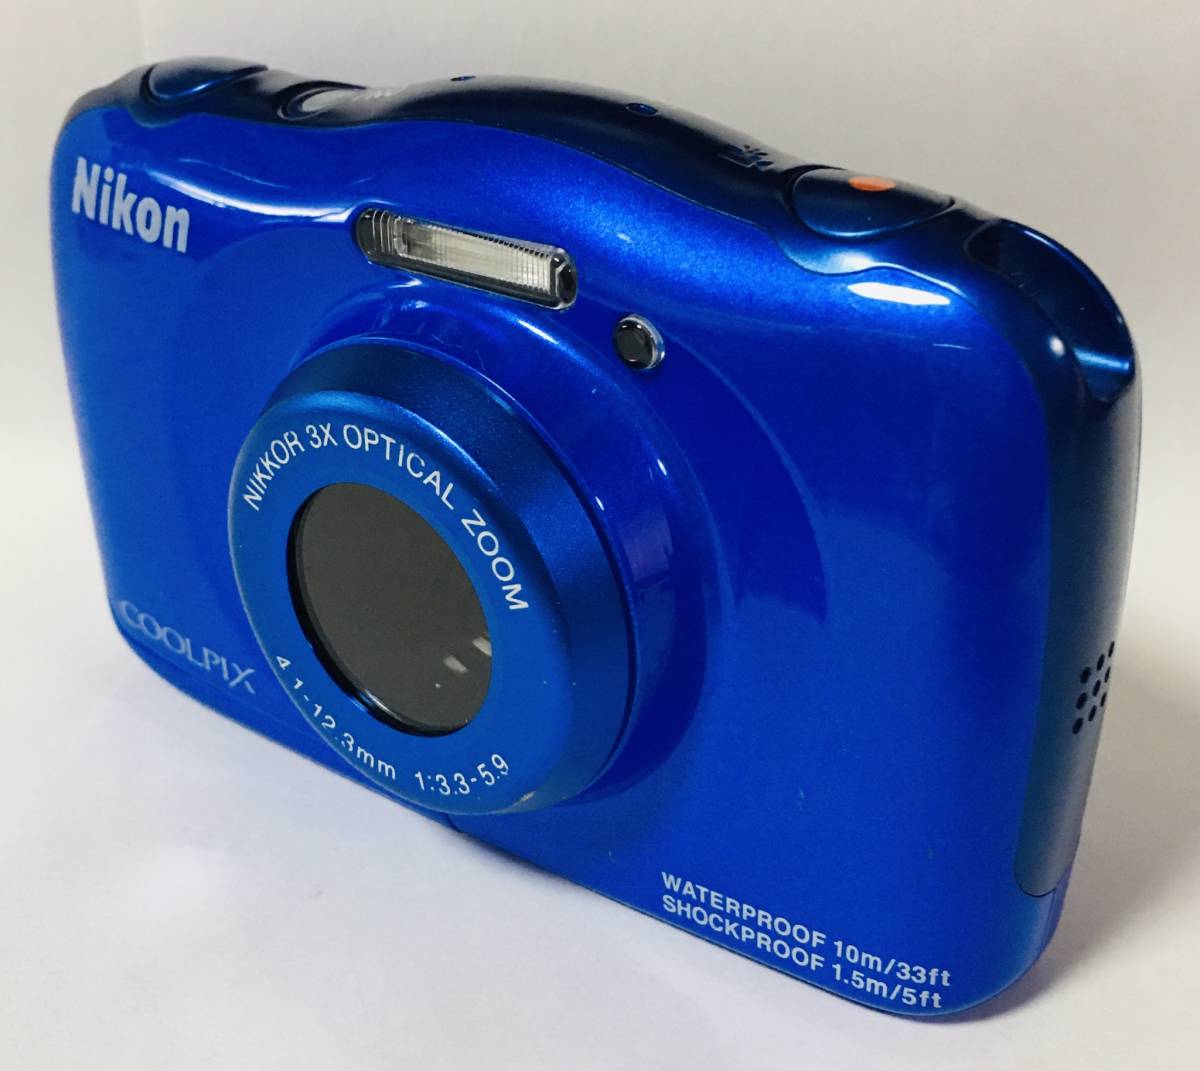 2台セット】 デジカメ Nikon COOLPIX S33 ブルー【防水10m】 - post-express.eu